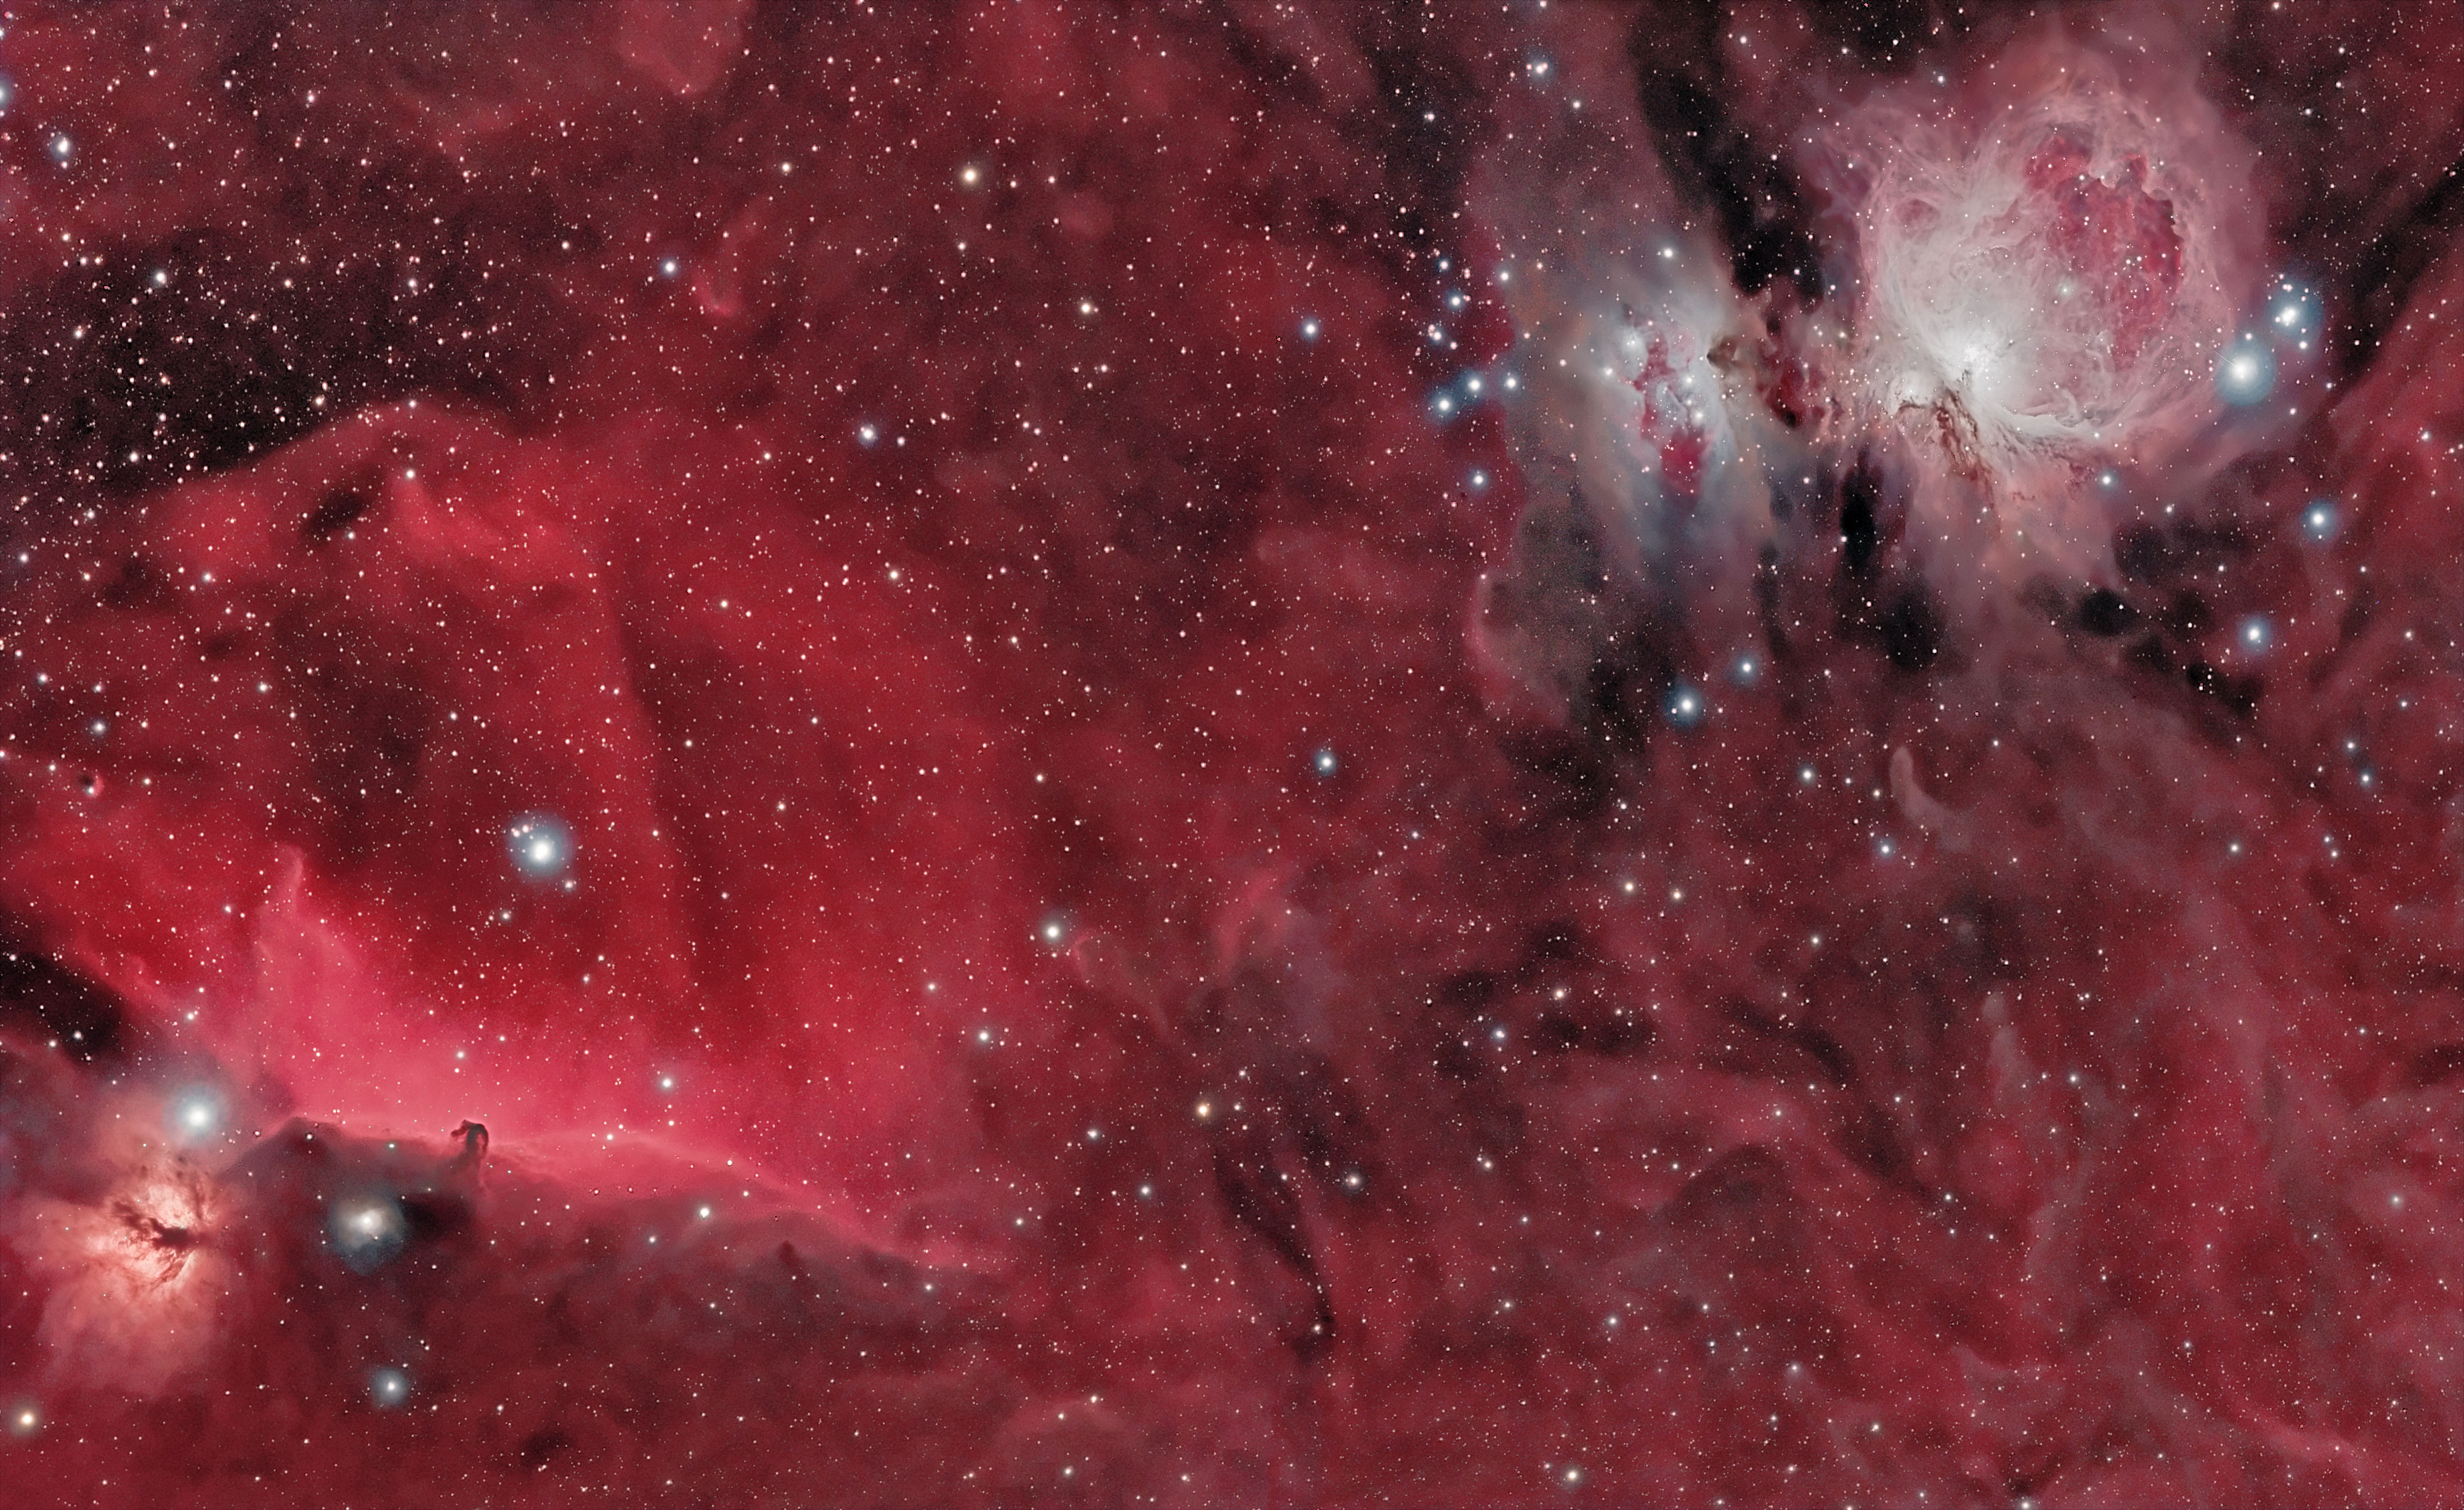 Tête de Cheval et nébuleuses d’Orion